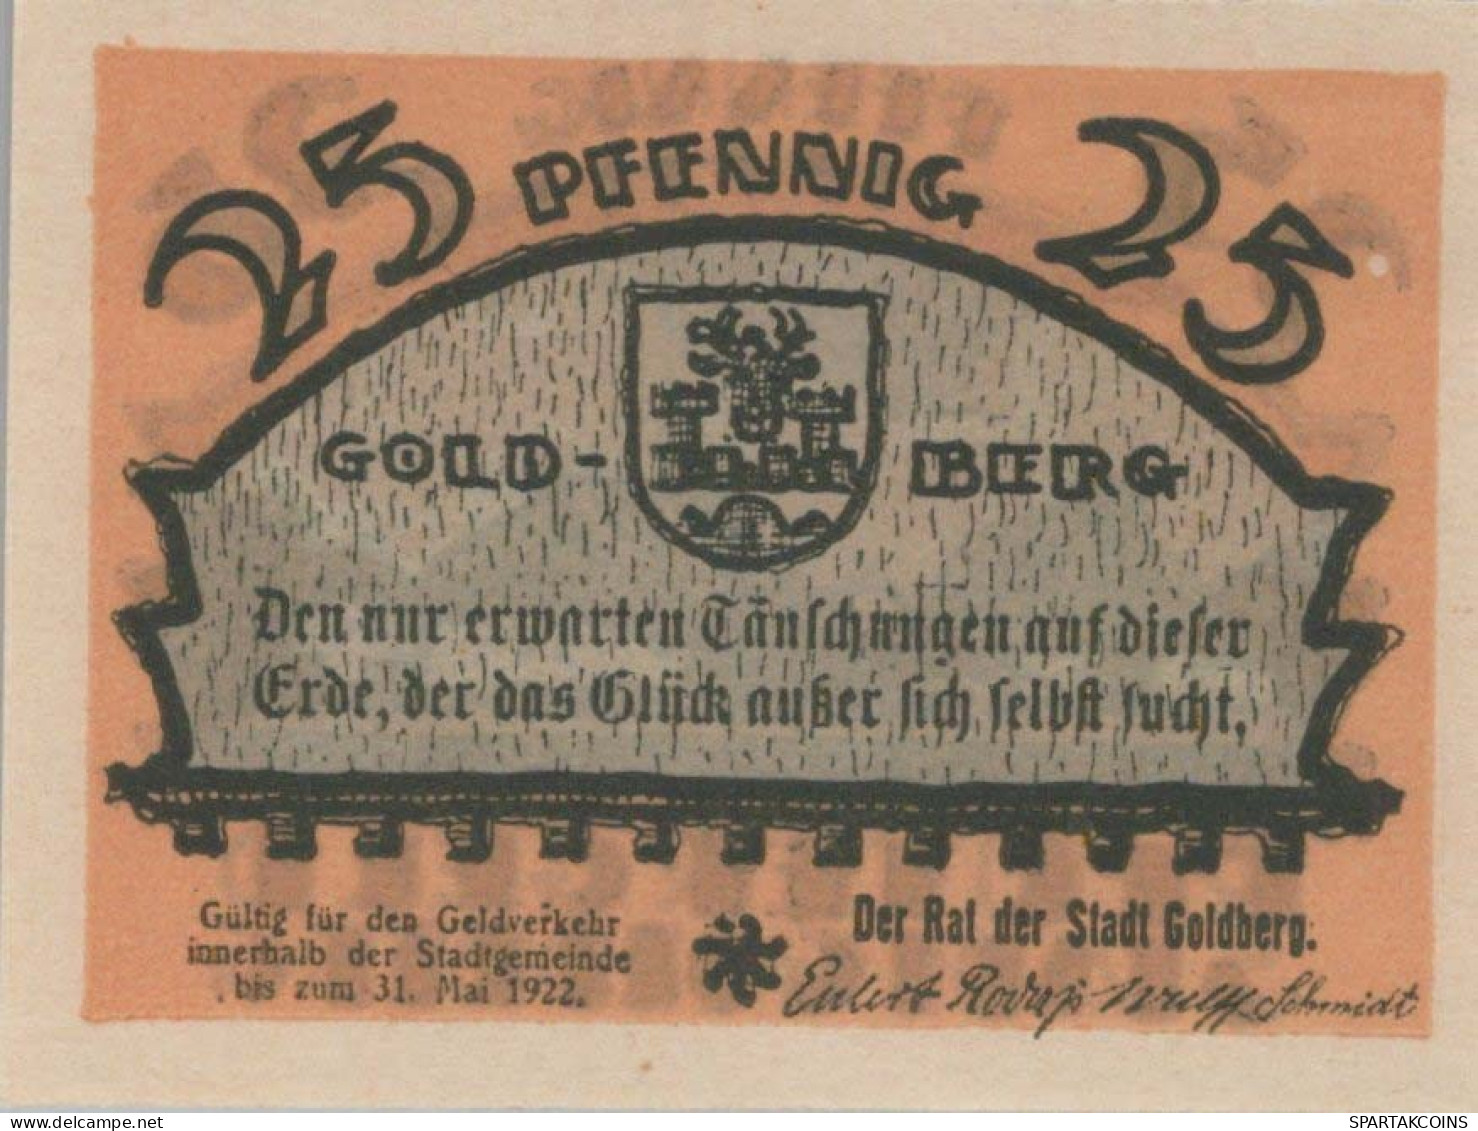 25 PFENNIG 1922 GOLDBERG IN MECKLENBURG Mecklenburg-Schwerin DEUTSCHLAND #PG336 - [11] Local Banknote Issues